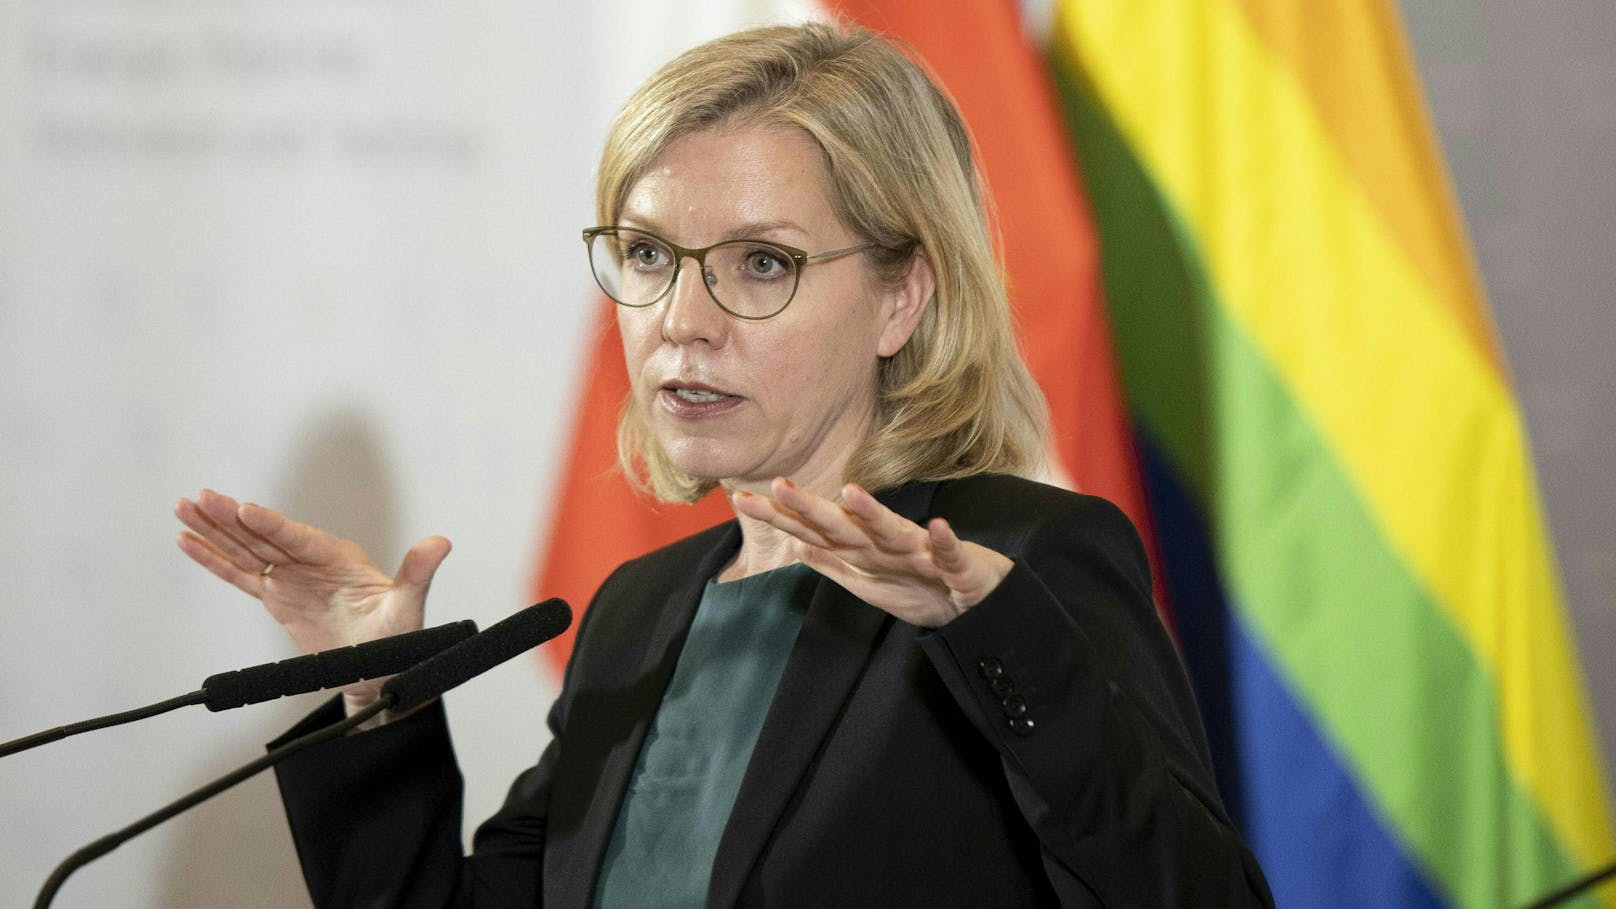 Klimaschutzministerin Leonore Gewessler (GRÜNE) am 2. Juni 2022 im Rahmen einer Pressekonferenz.